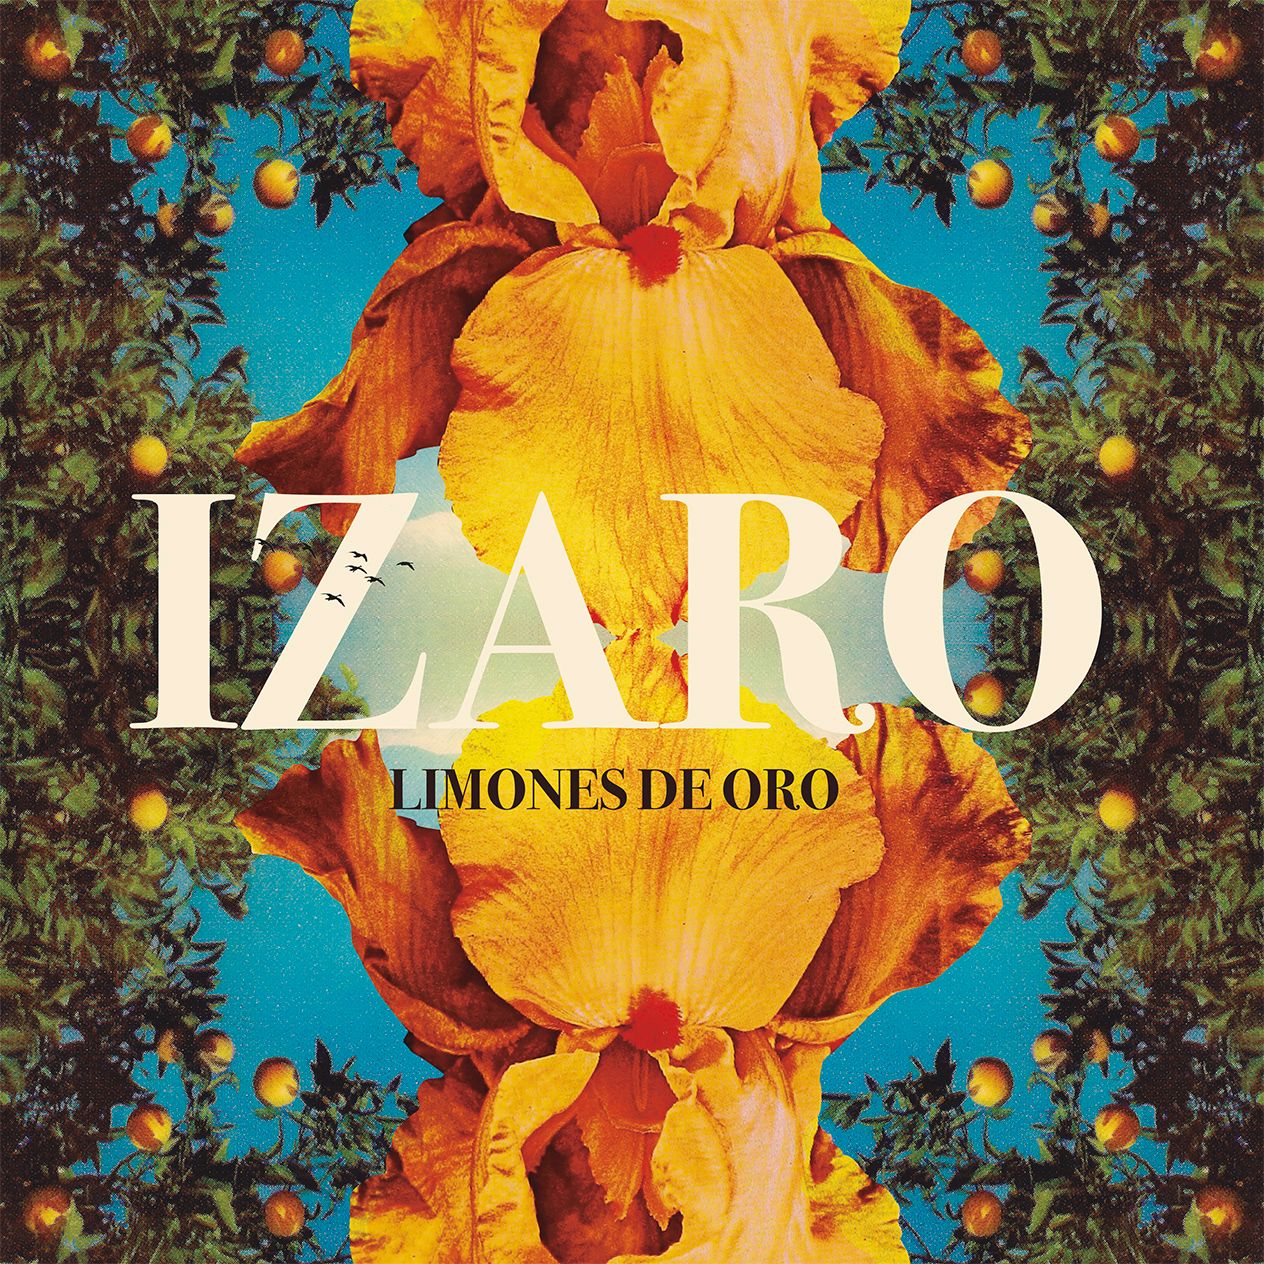 Limones de oro - Izaro encara la pospandemia con disco nuevo y una ambiciosa gira